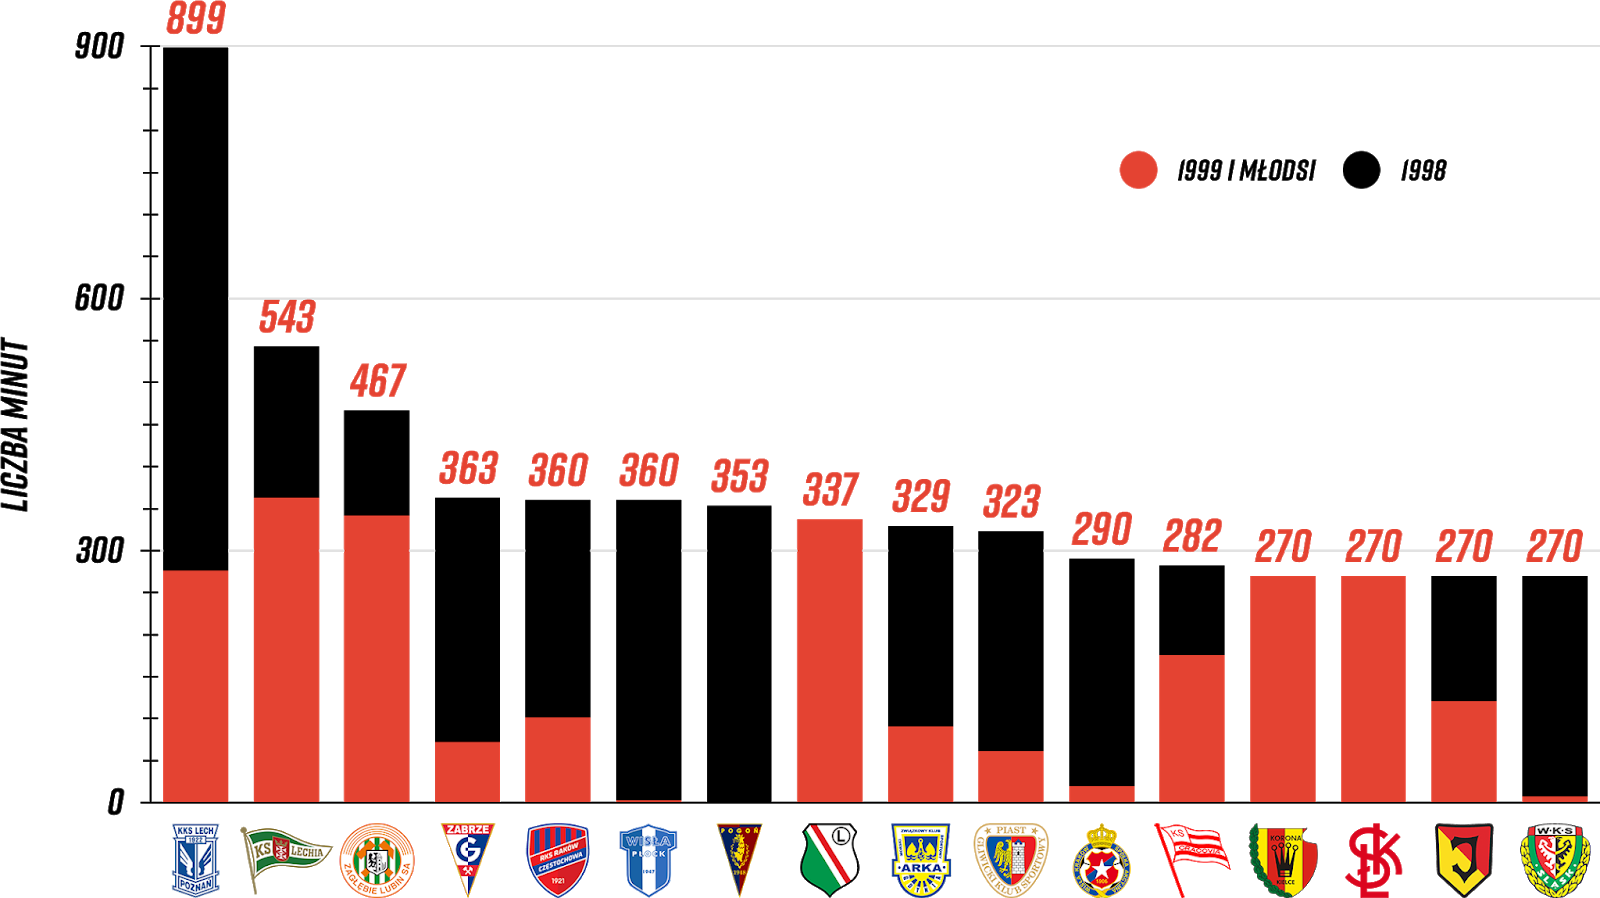 Klasyfikacja klubów pod względem rozegranych minut przez młodzieżowców po trzech kolejkach PKO Ekstraklasy<br><br>Źródło: Opracowanie własne na podstawie 90minut.pl<br><br>graf. Bartosz Urban